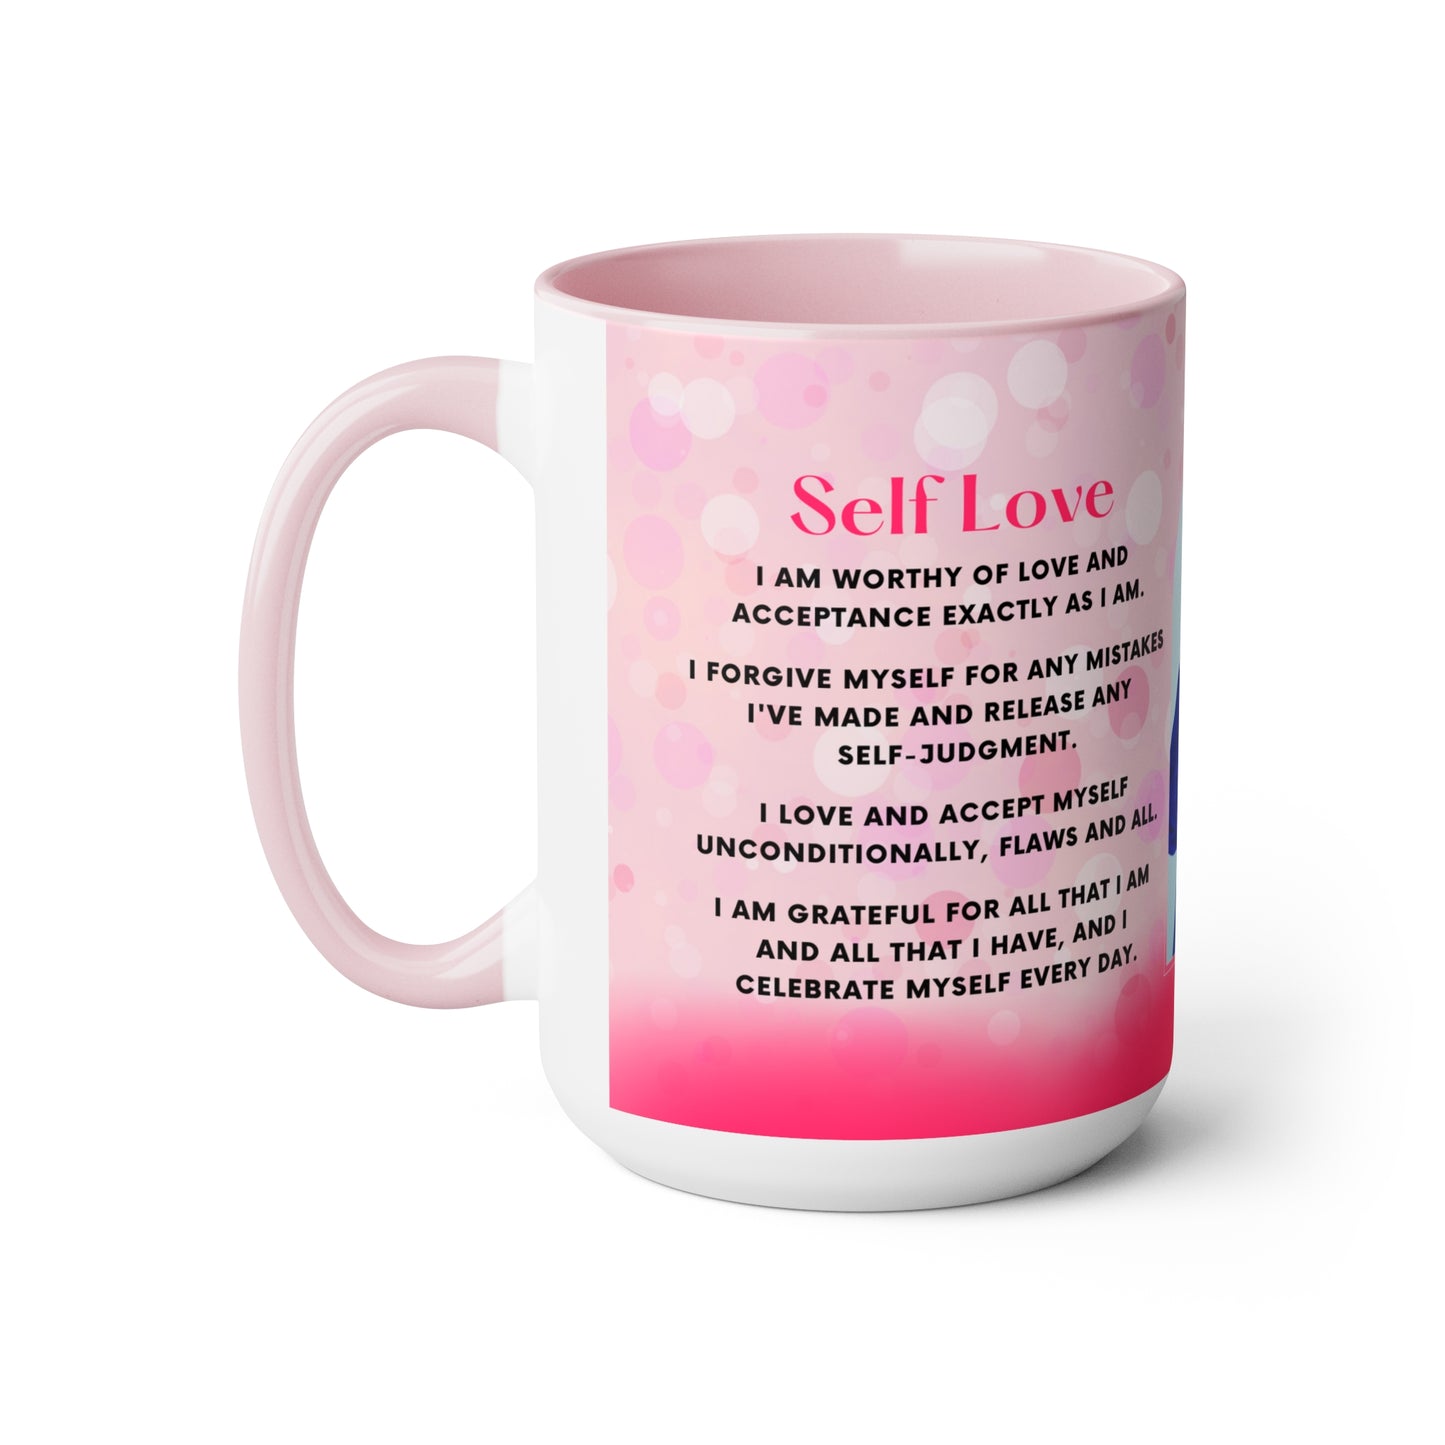 Self Love Mug - 15oz